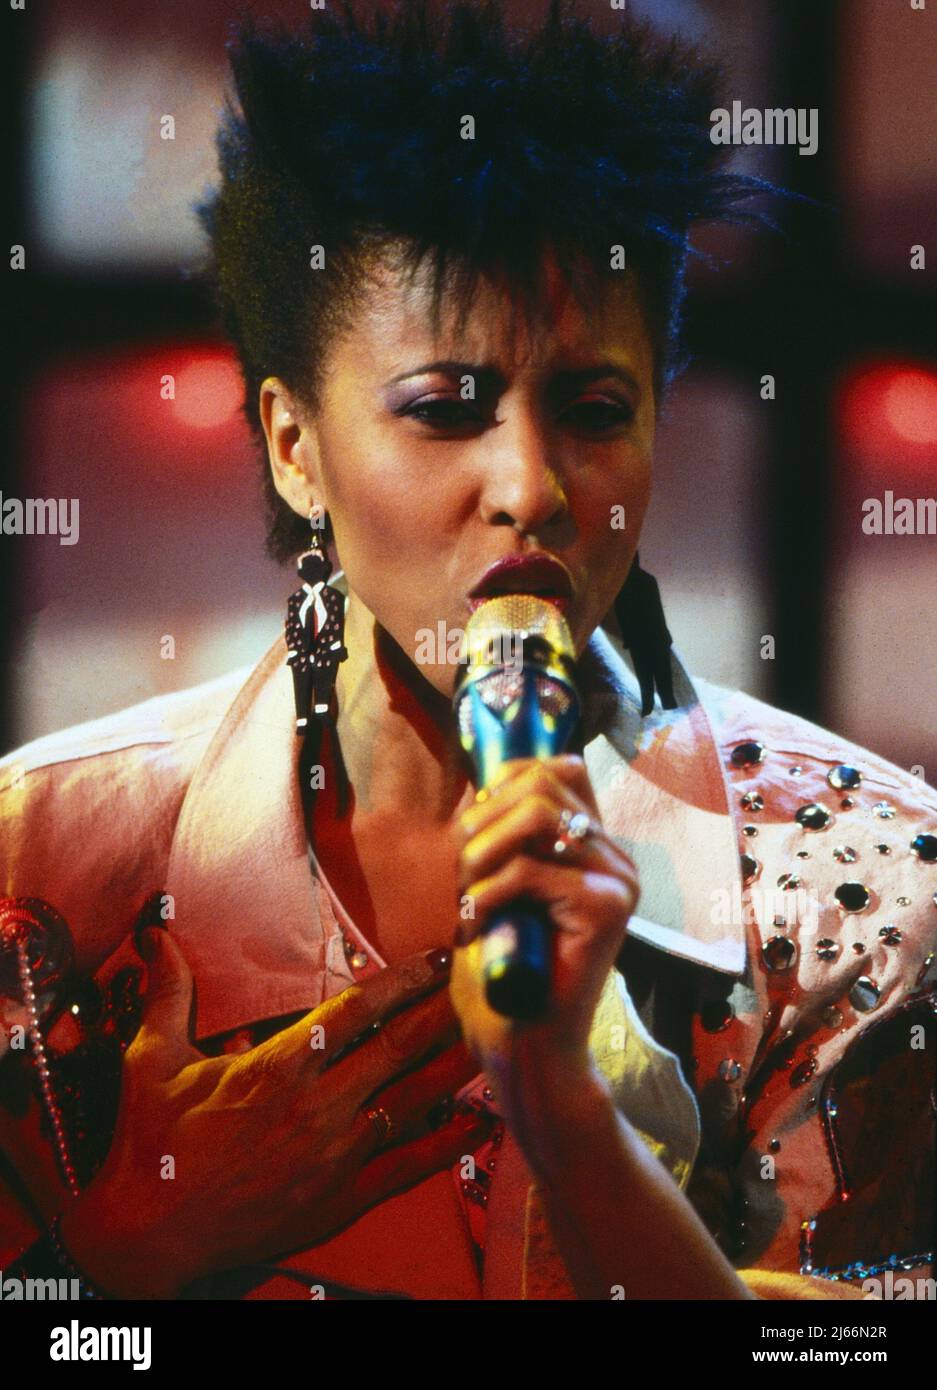 Chaka Khan, amerikanische Pop- und Soulsängerin, bei einem Auftritt, Deutschland um 1984. Stock Photo